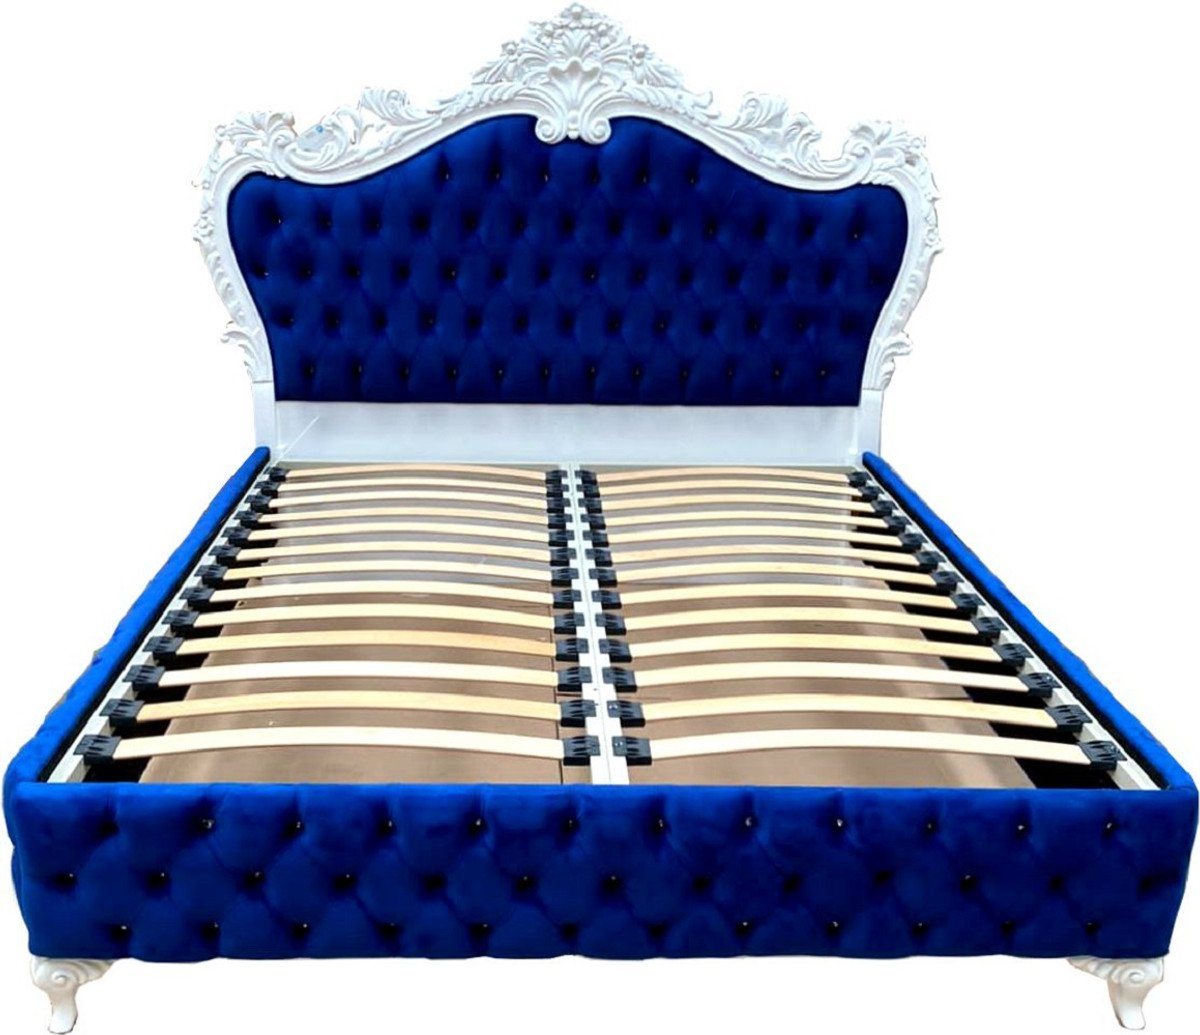 Casa Padrino Bett Doppelbett Royalblau / Weiß - Prunkvolles Massivholz Bett mit Glitzersteinen - Schlafzimmer Möbel von Casa Padrino